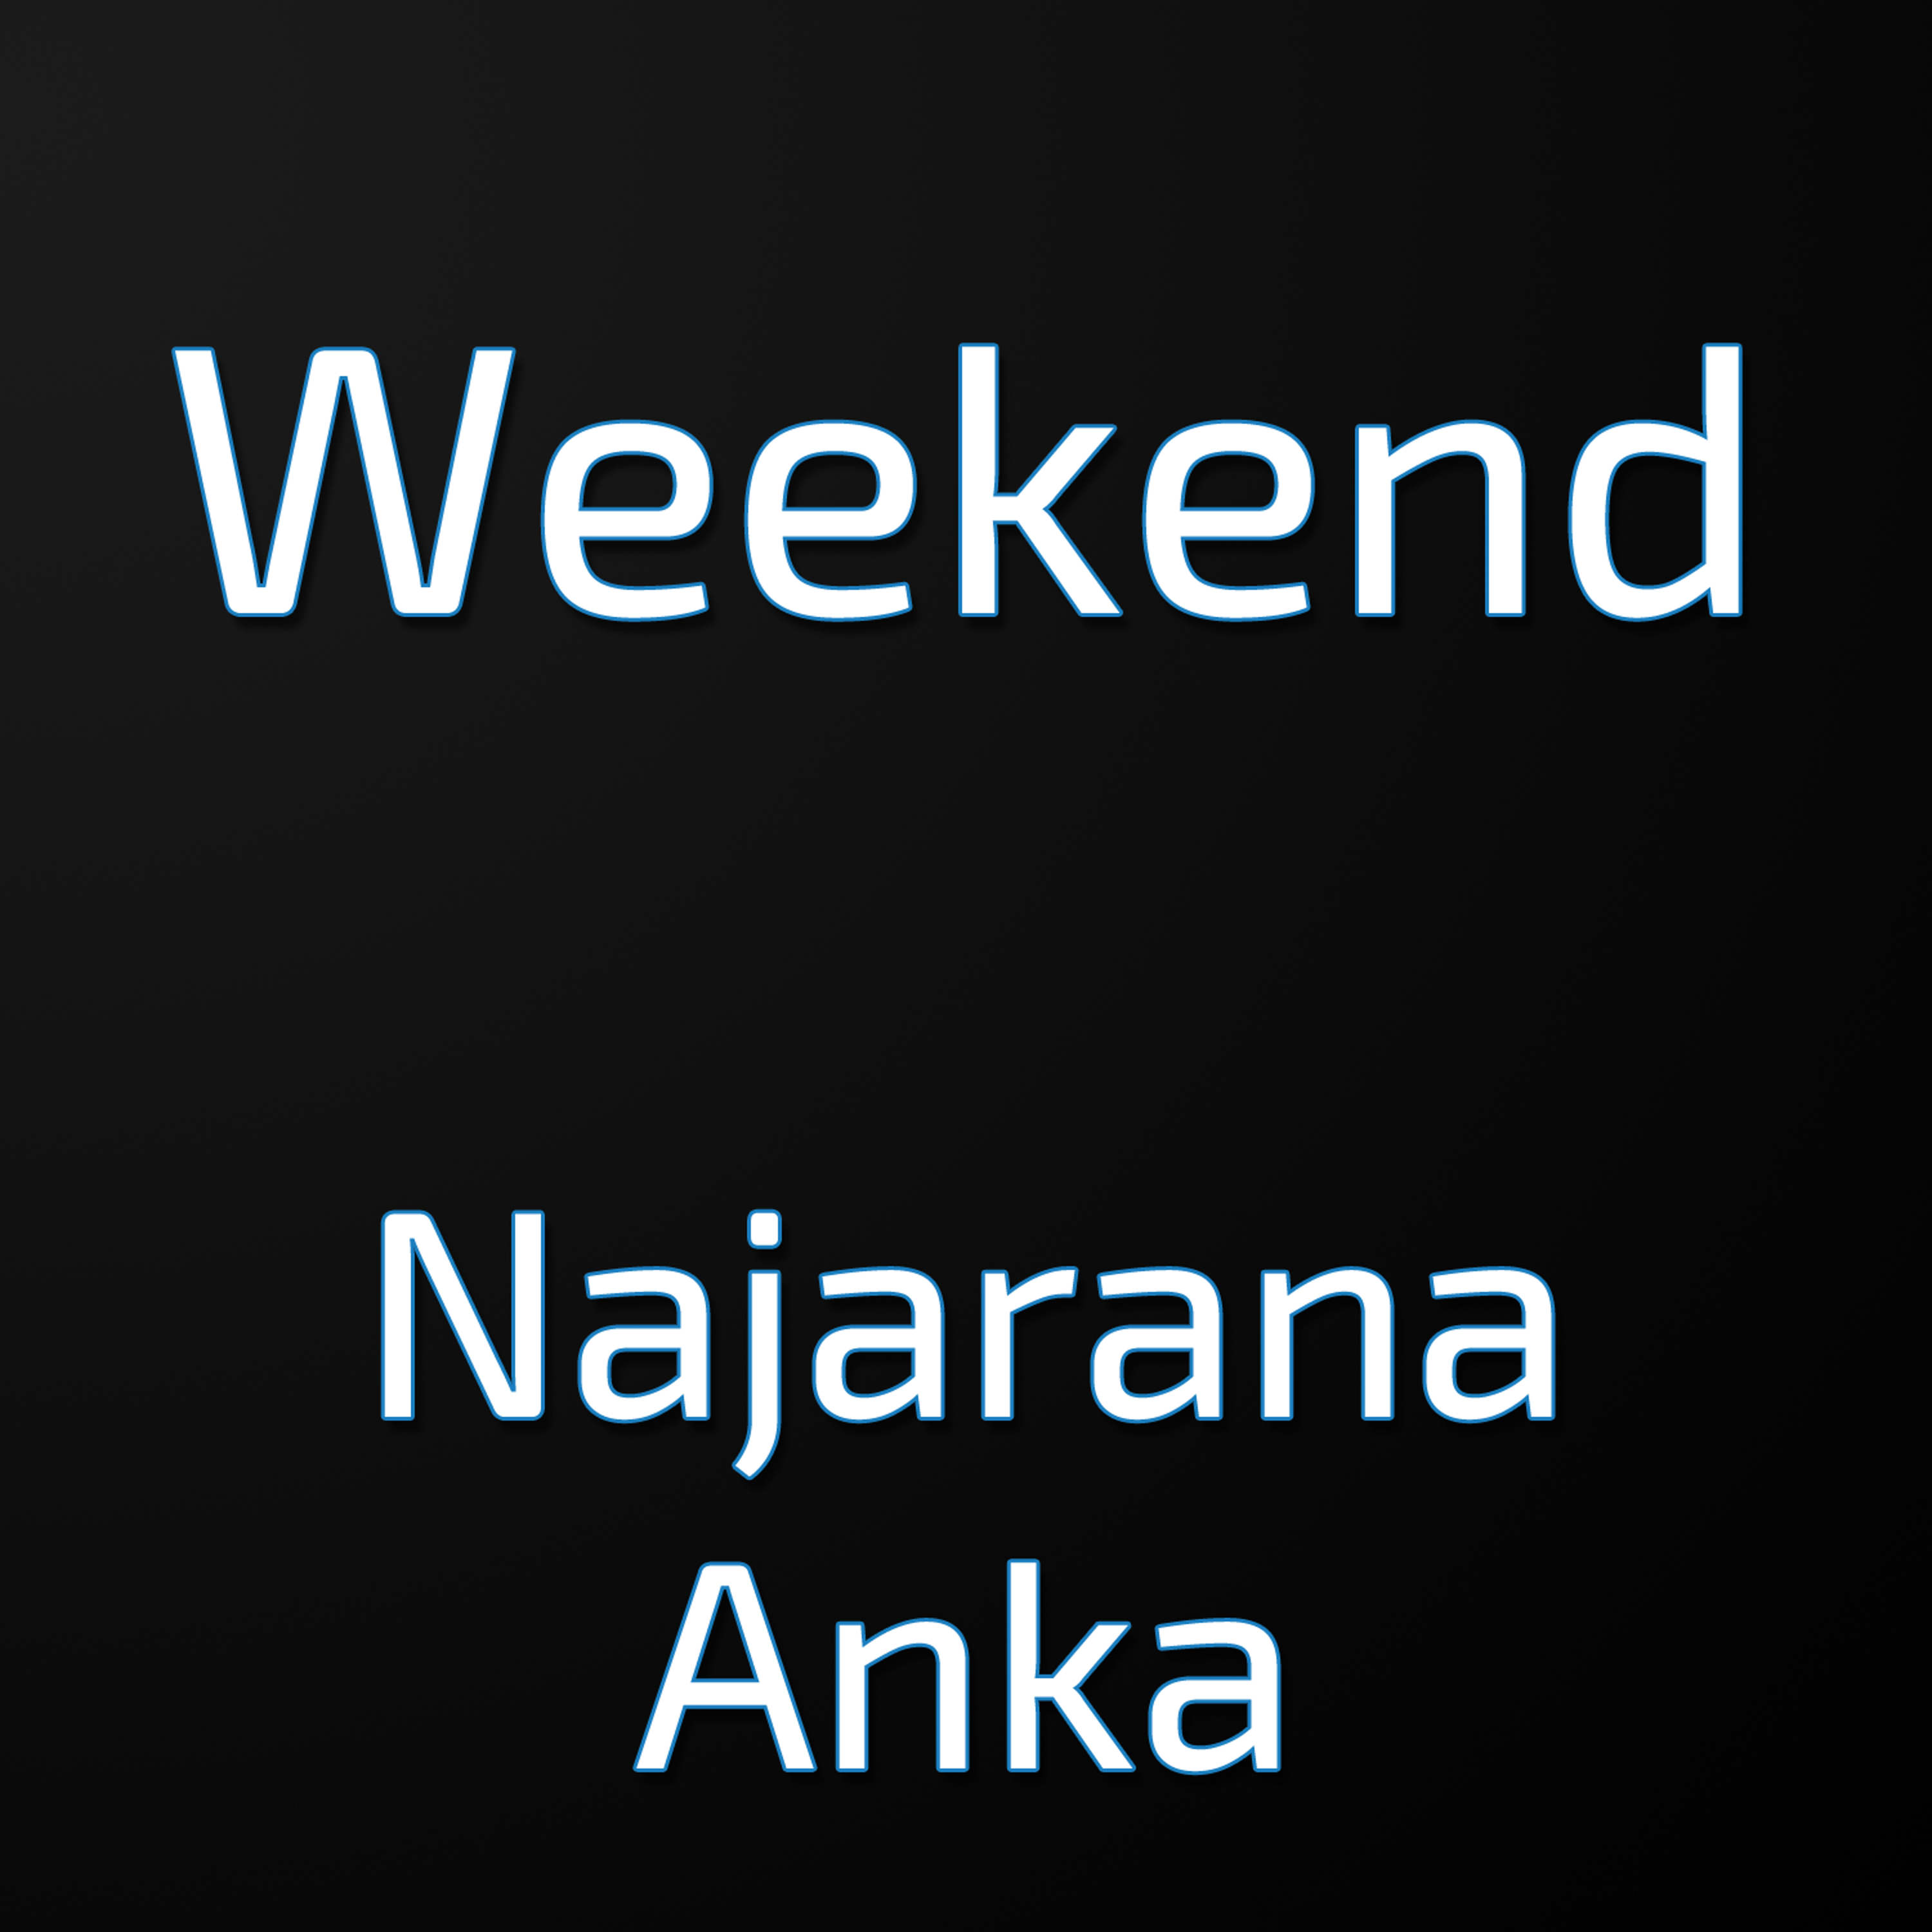 Weekend - Najarana Anka